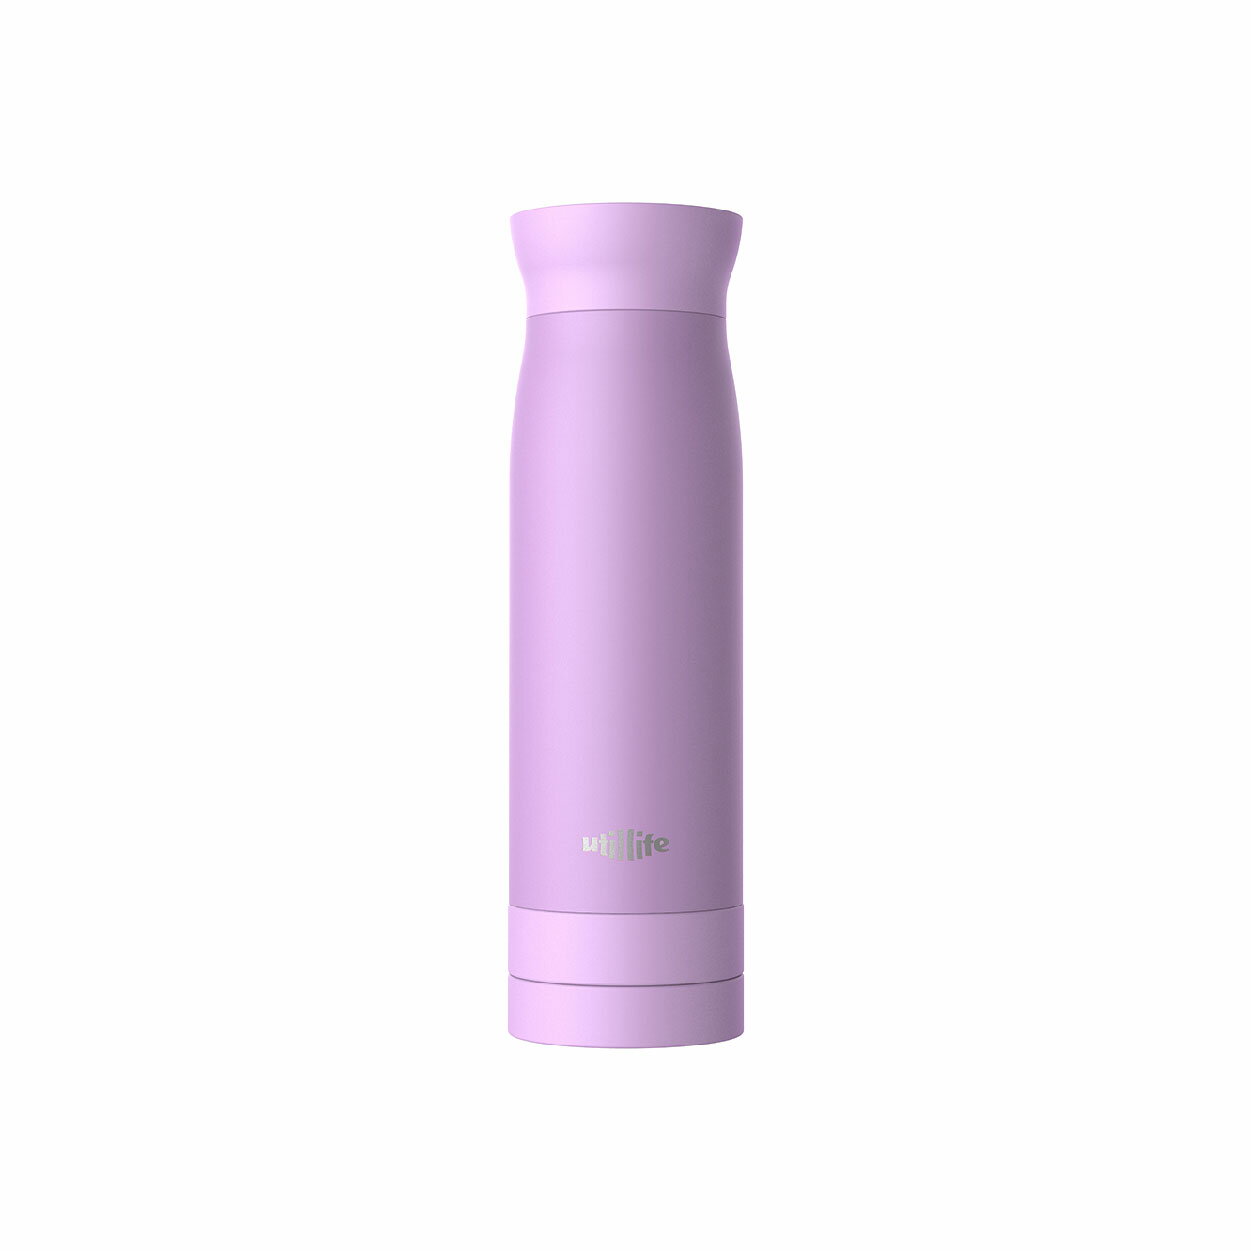 【哇哇蛙】加拿大 UTILLIFE 輕盈保溫瓶 / 粉紫色 水壺 保溫杯 瓶子 熱水瓶 水瓶 隨身瓶 茶壺